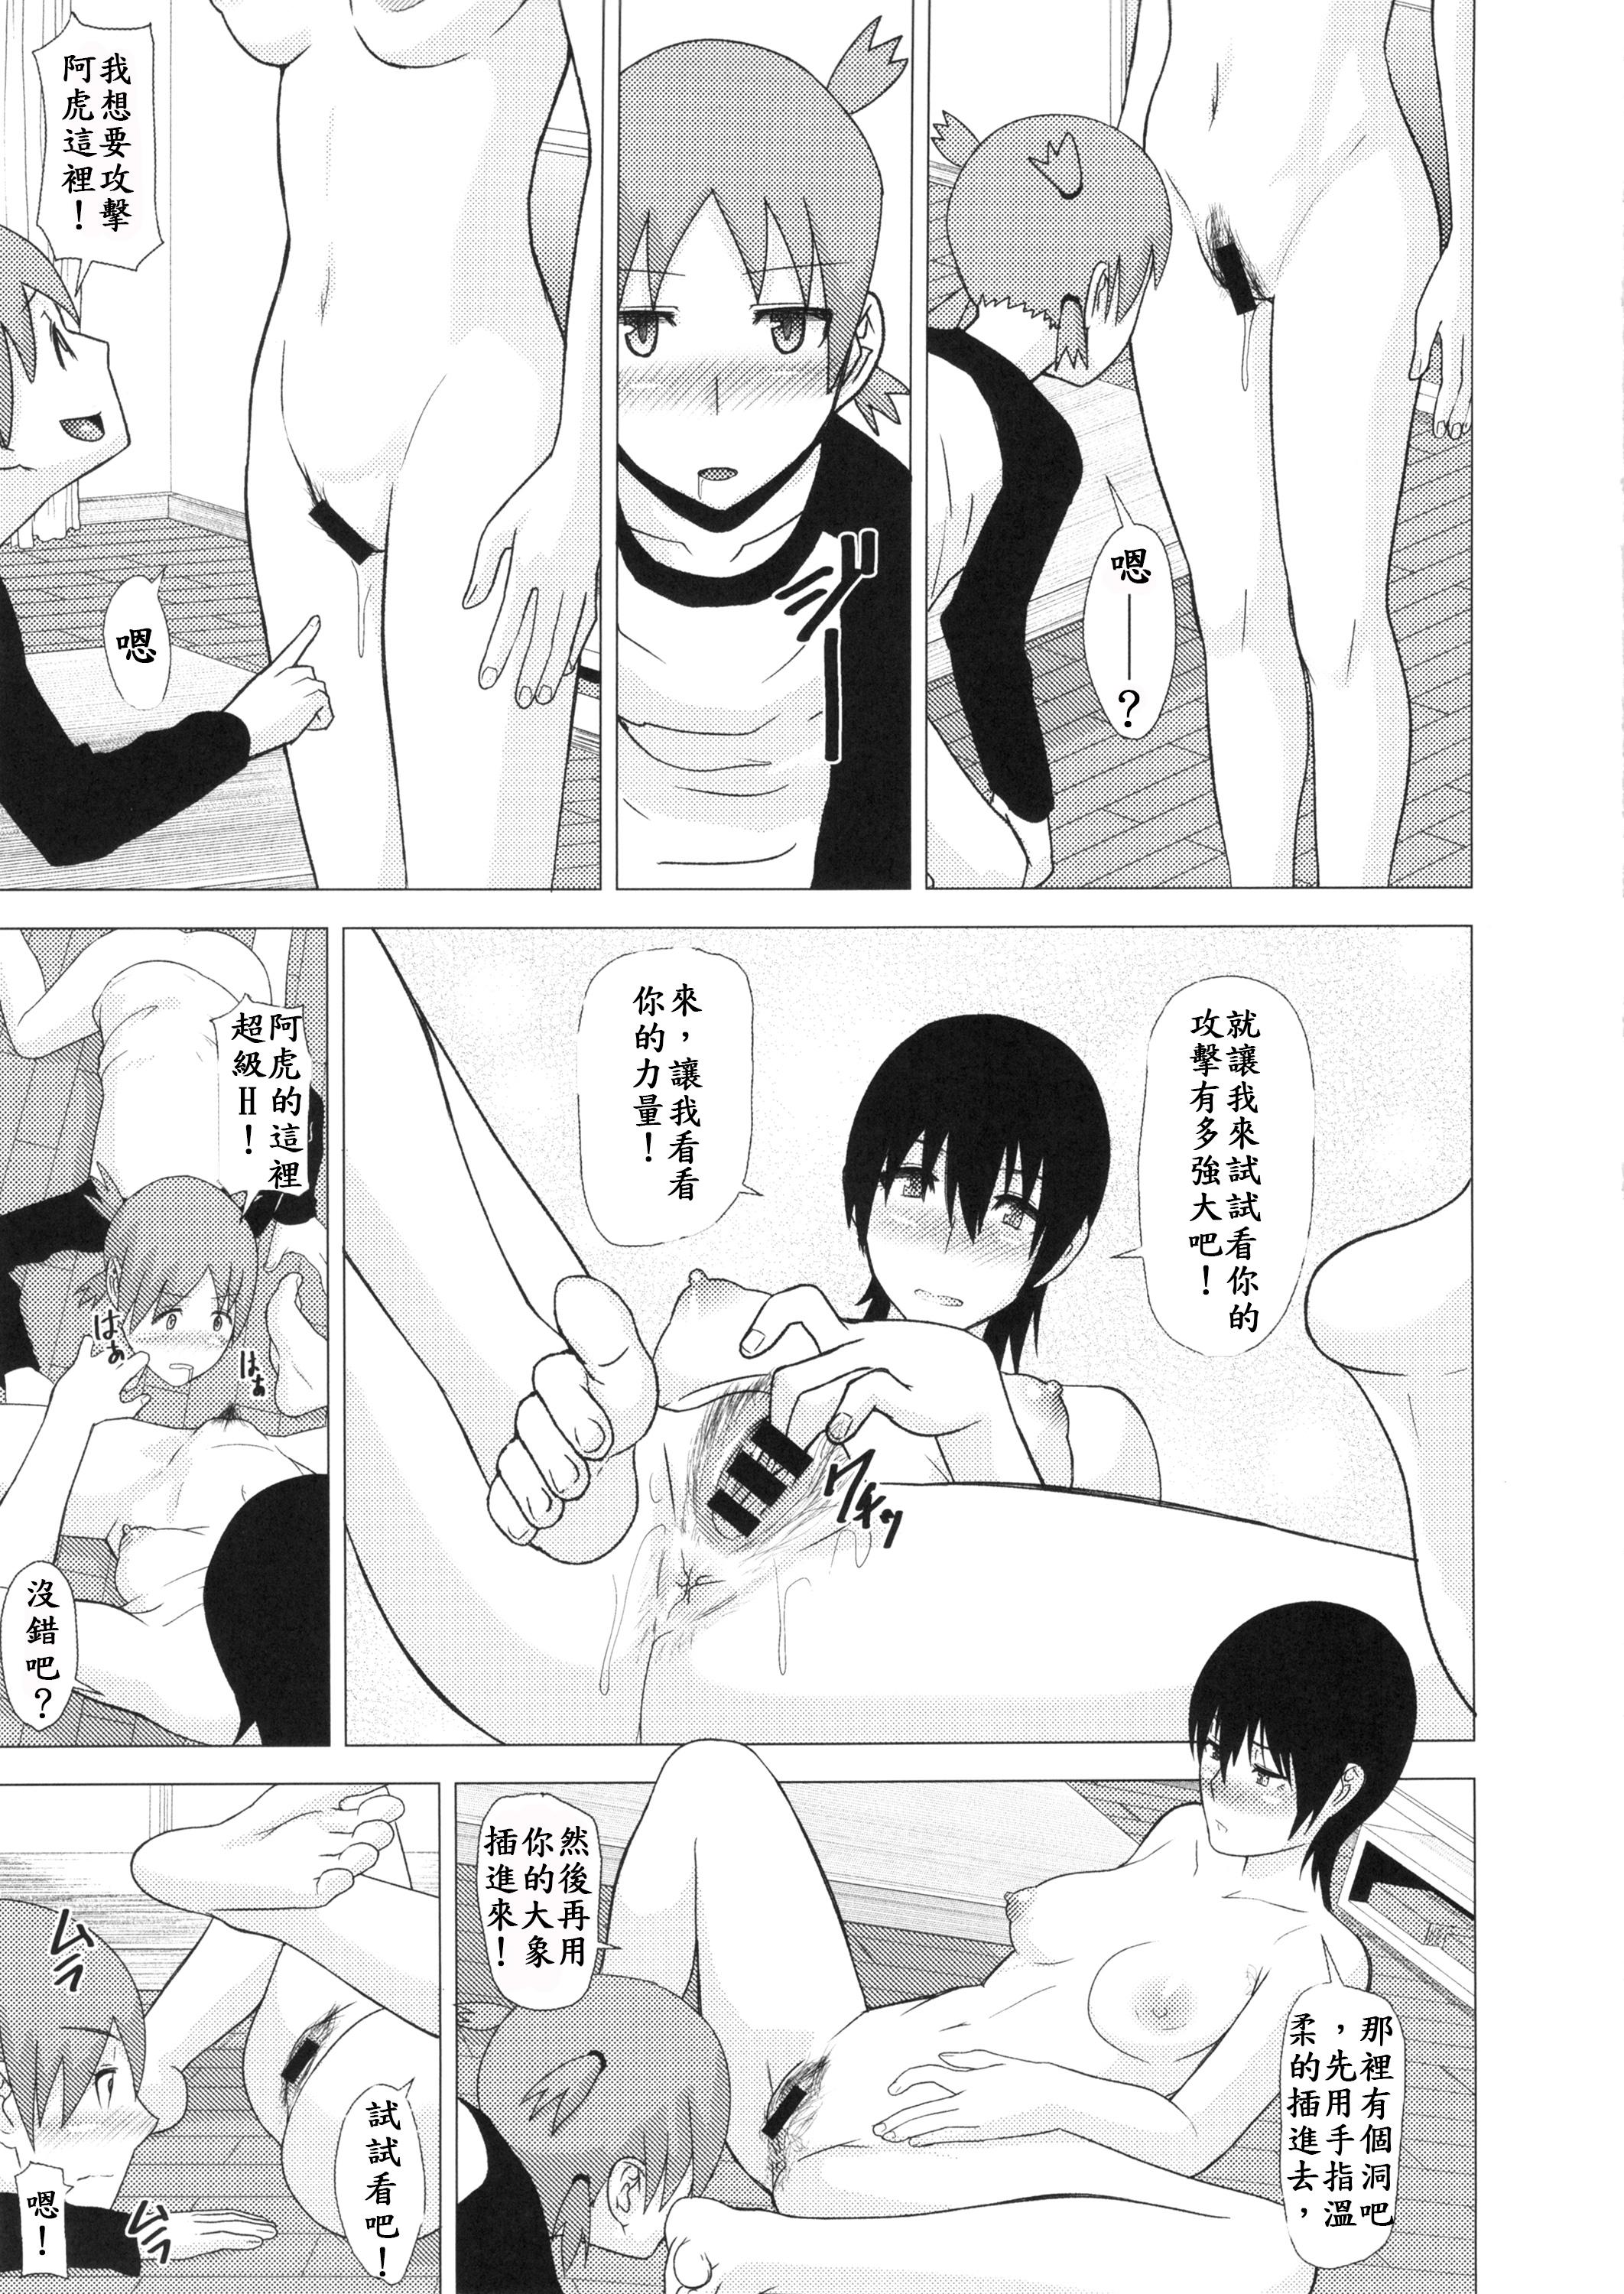 Humiliation REDLEVEL14 - Yotsubato Strapon - Page 9